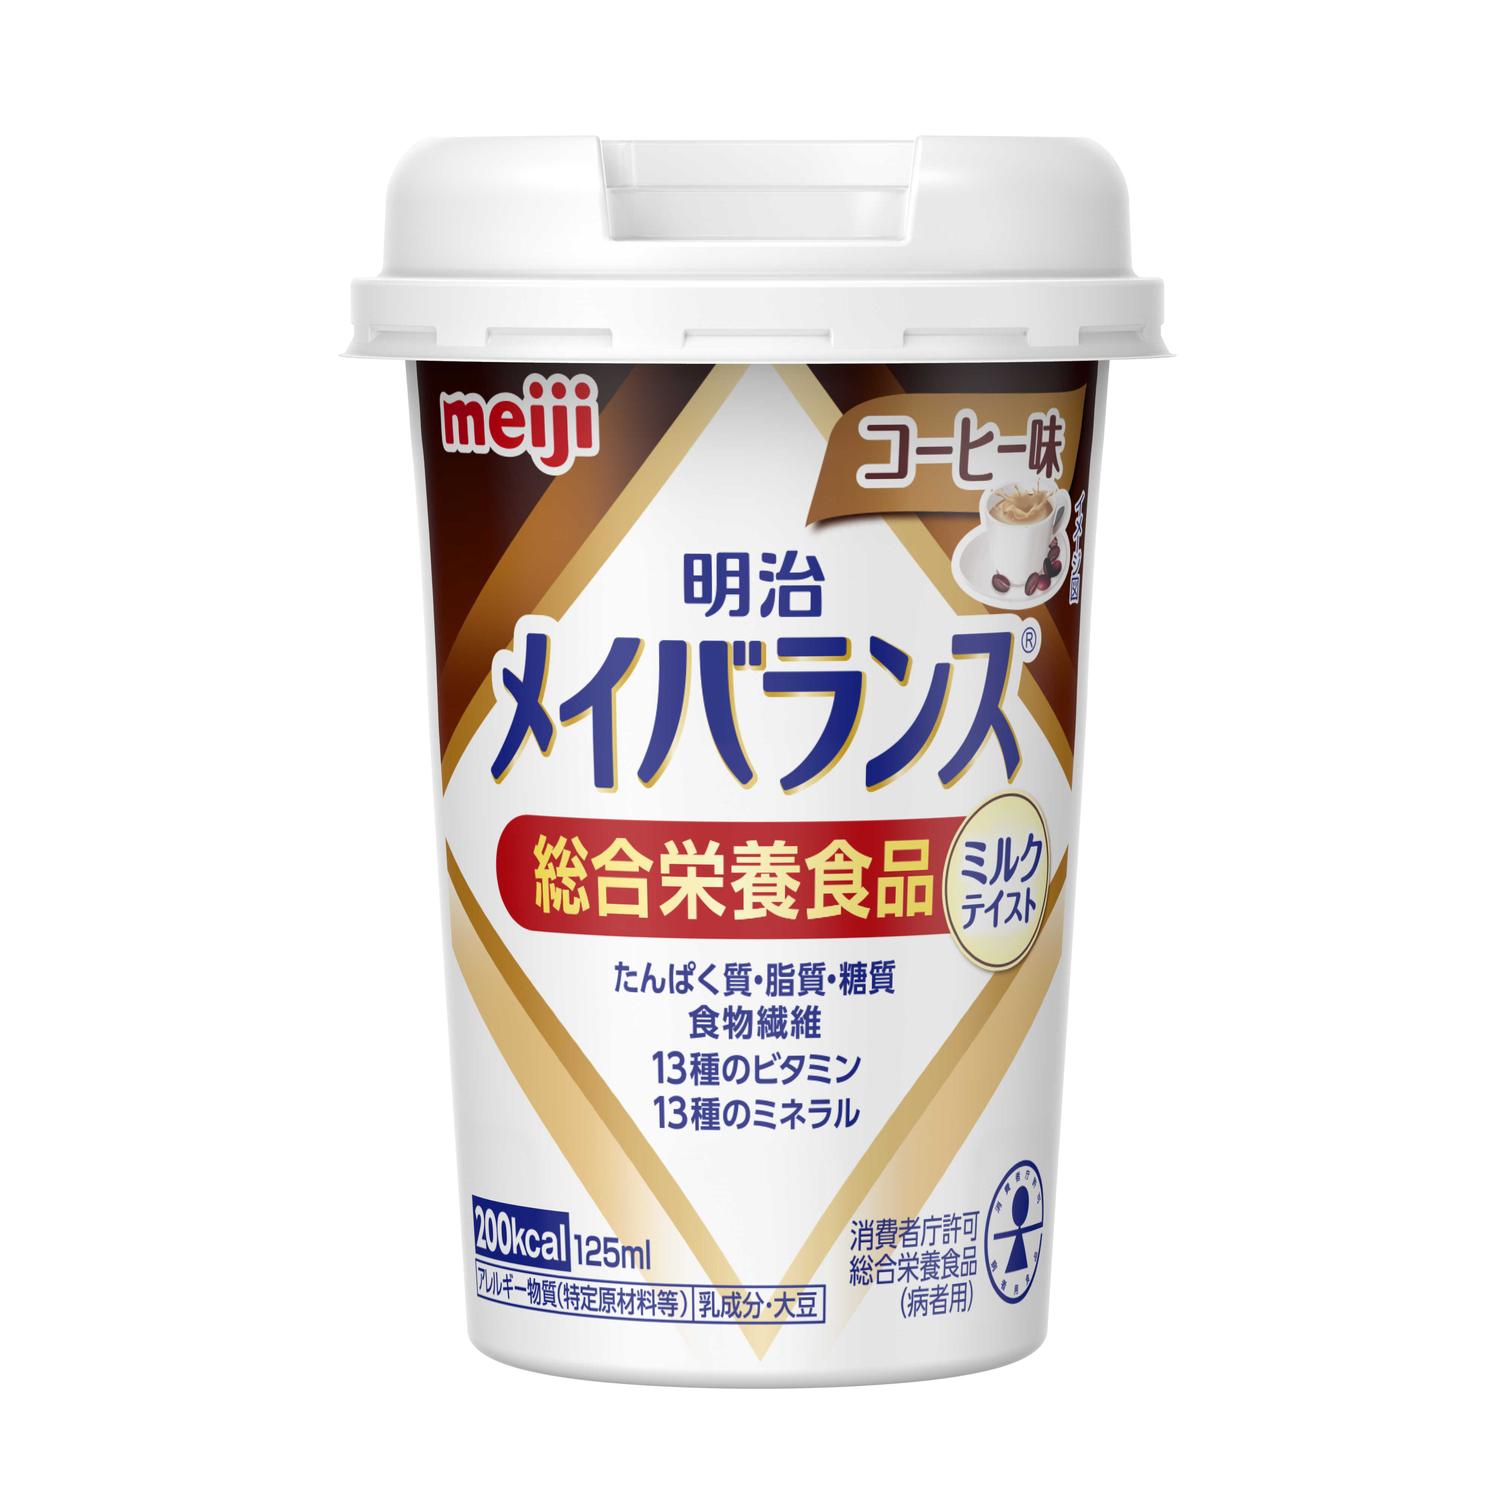 ◇明治 メイバランス Miniカップ コーヒー味 125ml